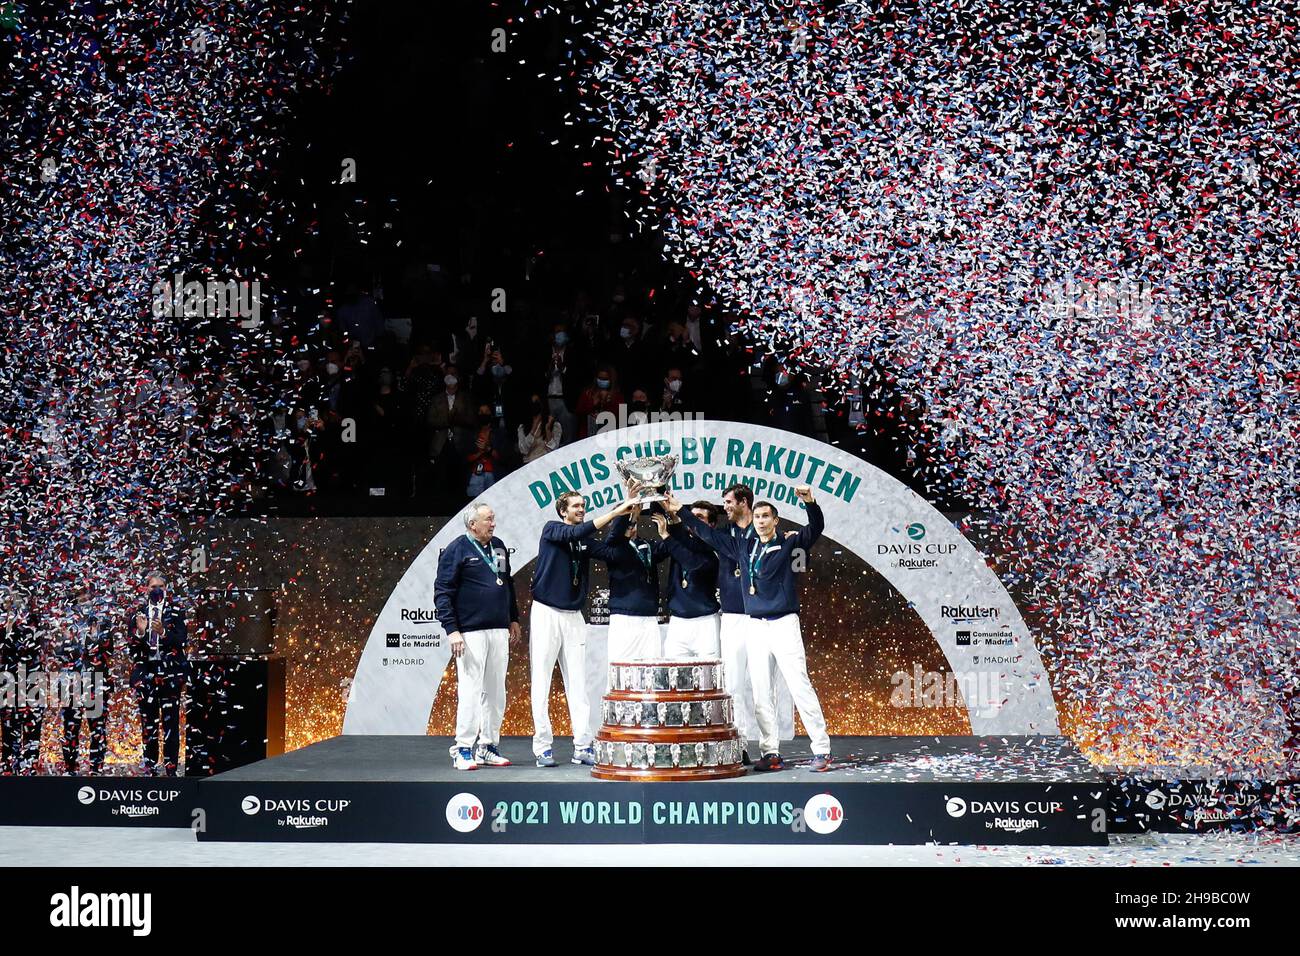 Russland-Team feiert den Sieg mit der Trophäe beim Finale des Davis Cup 2021, Tennisspiels zwischen Russland und Kroatien am 5. Dezember 2021 in der Madrid Arena in Madrid, Spanien - Foto: Oscar Barroso/DPPI/LiveMedia Stockfoto